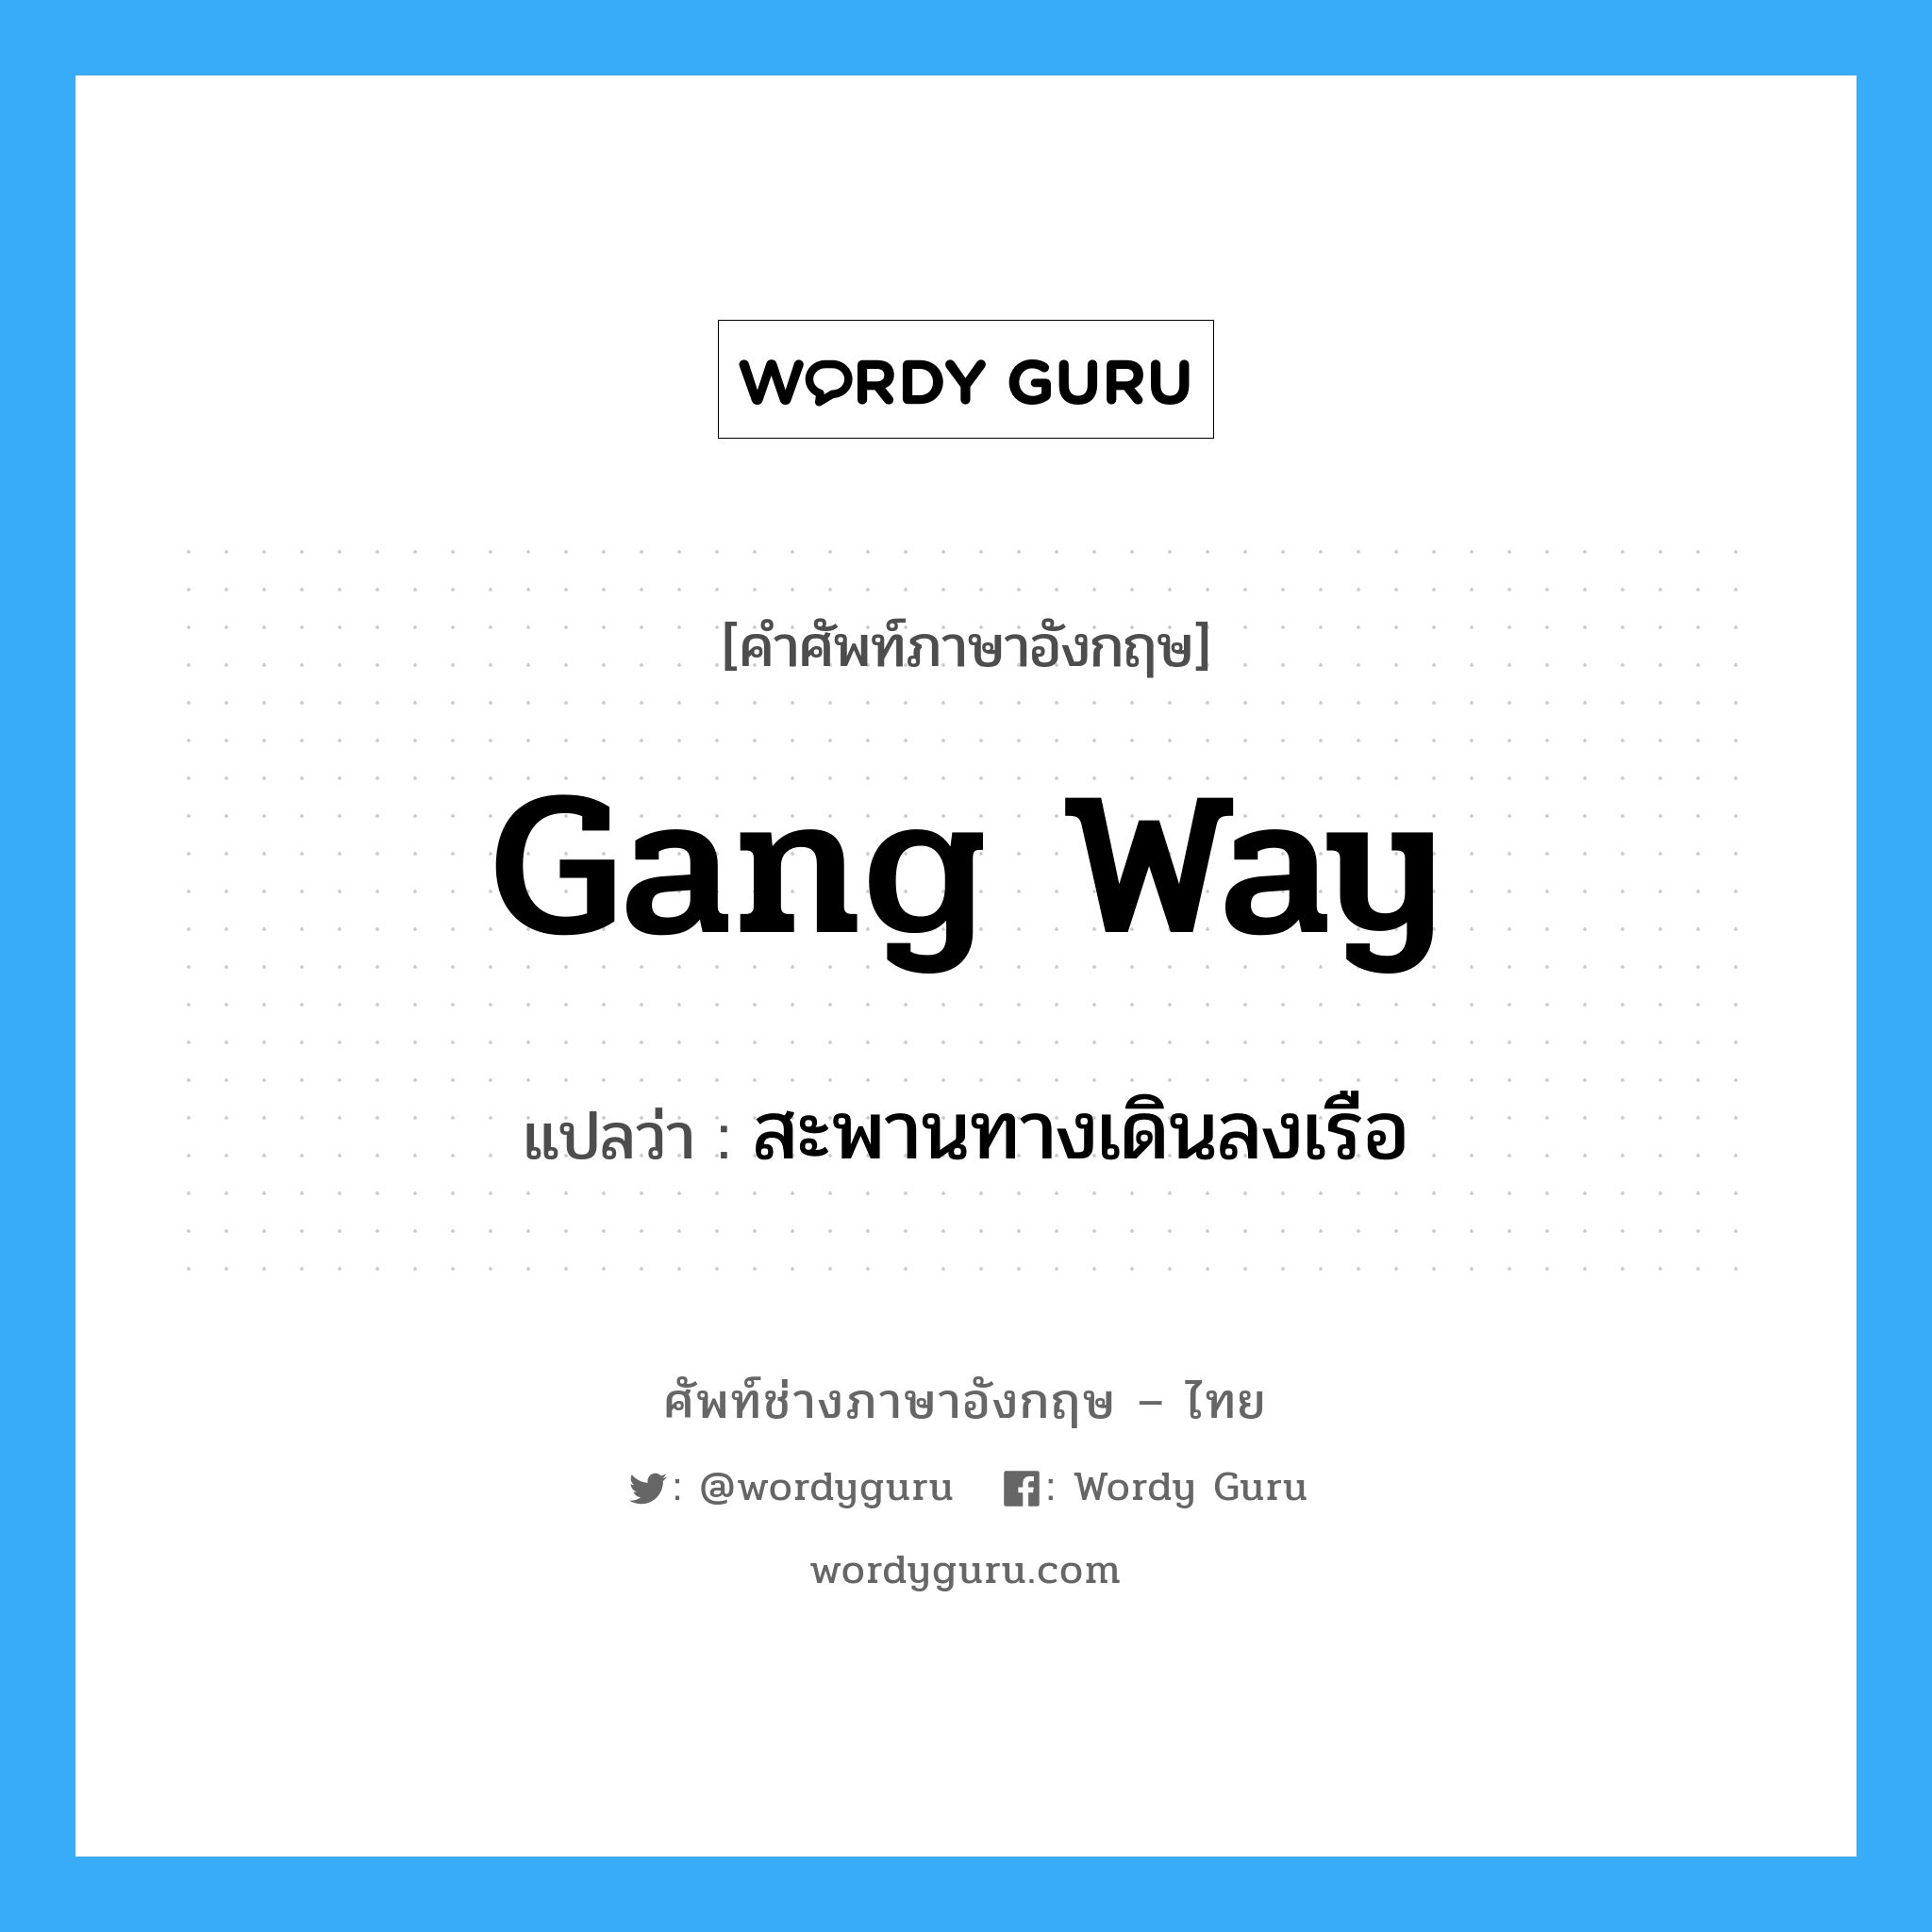 gang way แปลว่า?, คำศัพท์ช่างภาษาอังกฤษ - ไทย gang way คำศัพท์ภาษาอังกฤษ gang way แปลว่า สะพานทางเดินลงเรือ